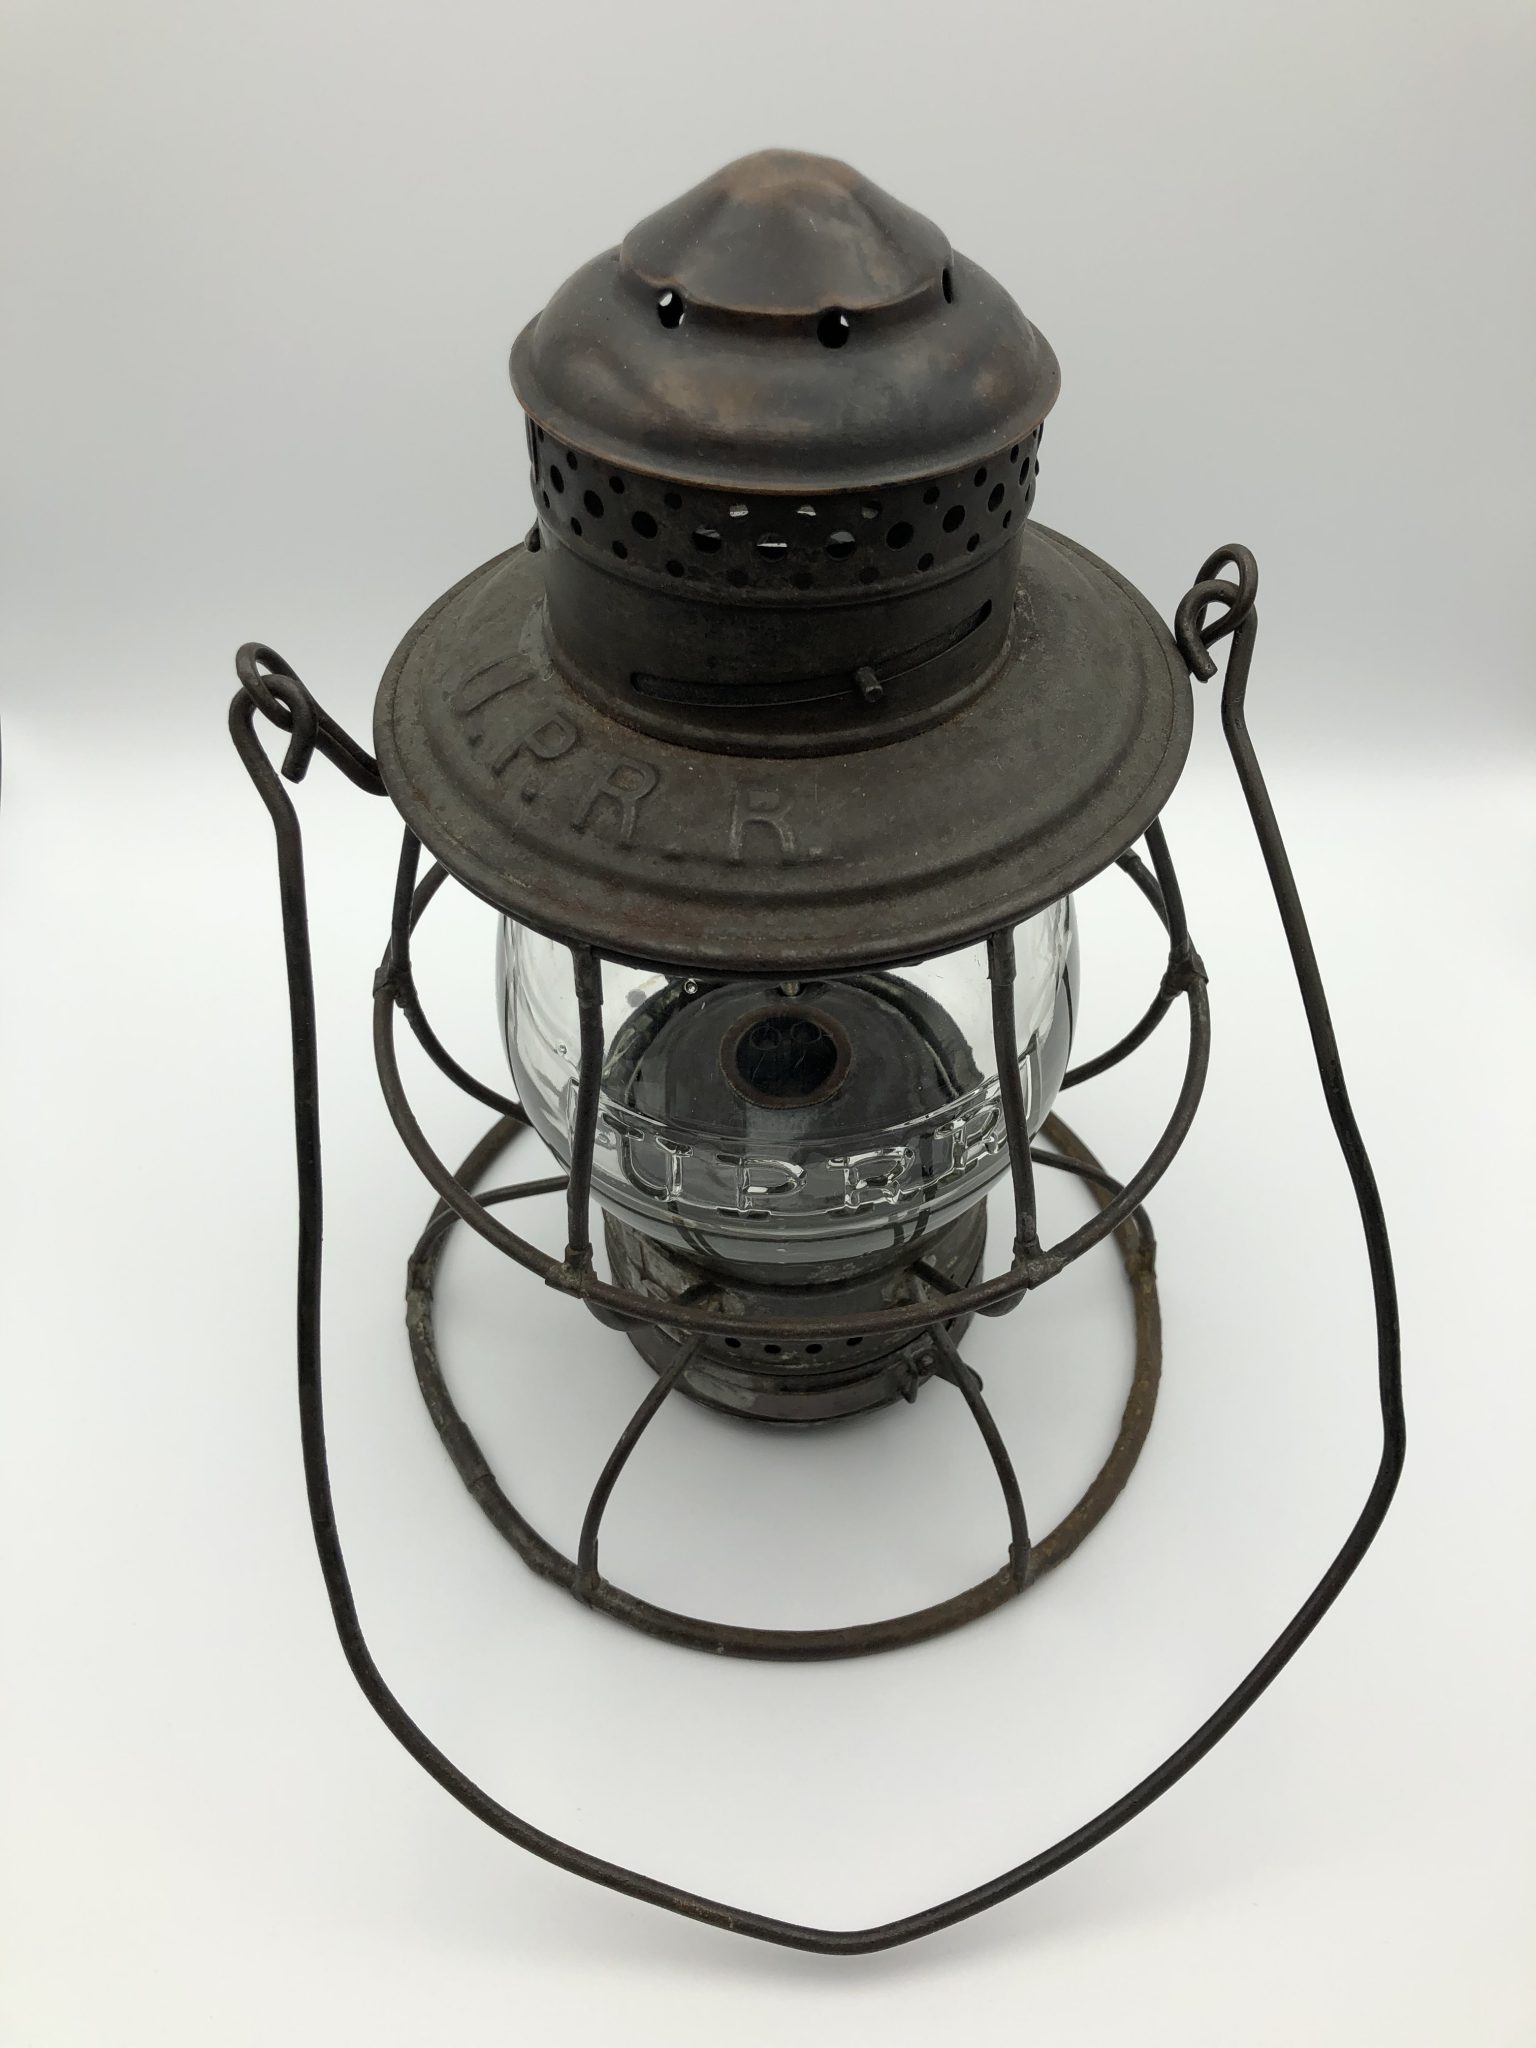 UPRR Brasstop Railroad Lantern